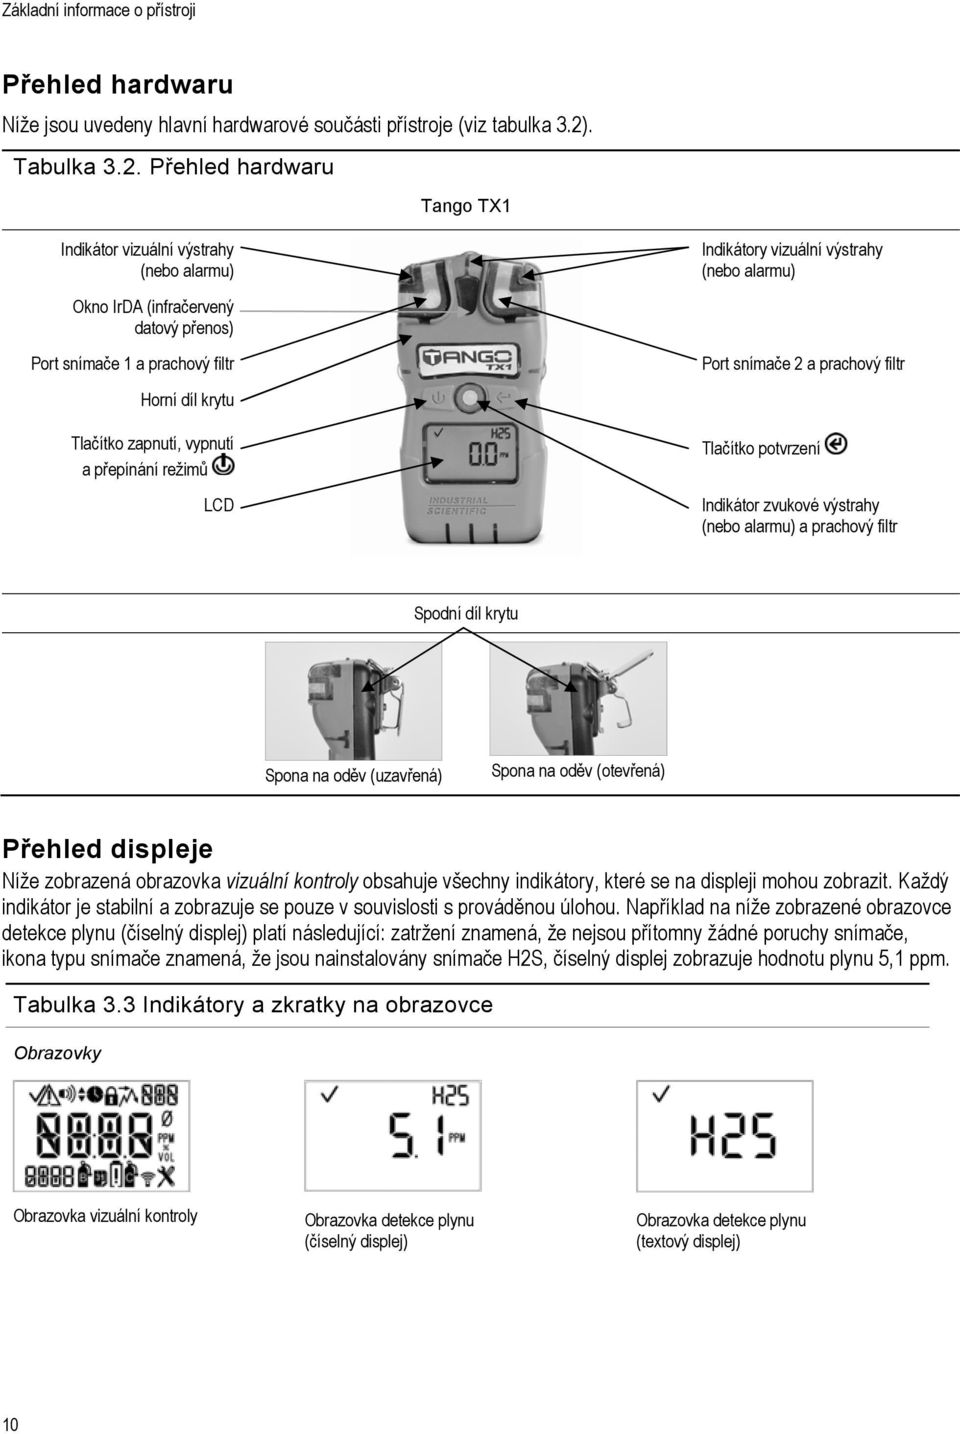 Přehled hardwaru Tango TX1 Indikátor vizuální výstrahy (nebo alarmu) Okno IrDA (infračervený datový přenos) Port snímače 1 a prachový filtr Indikátory vizuální výstrahy (nebo alarmu) Port snímače 2 a